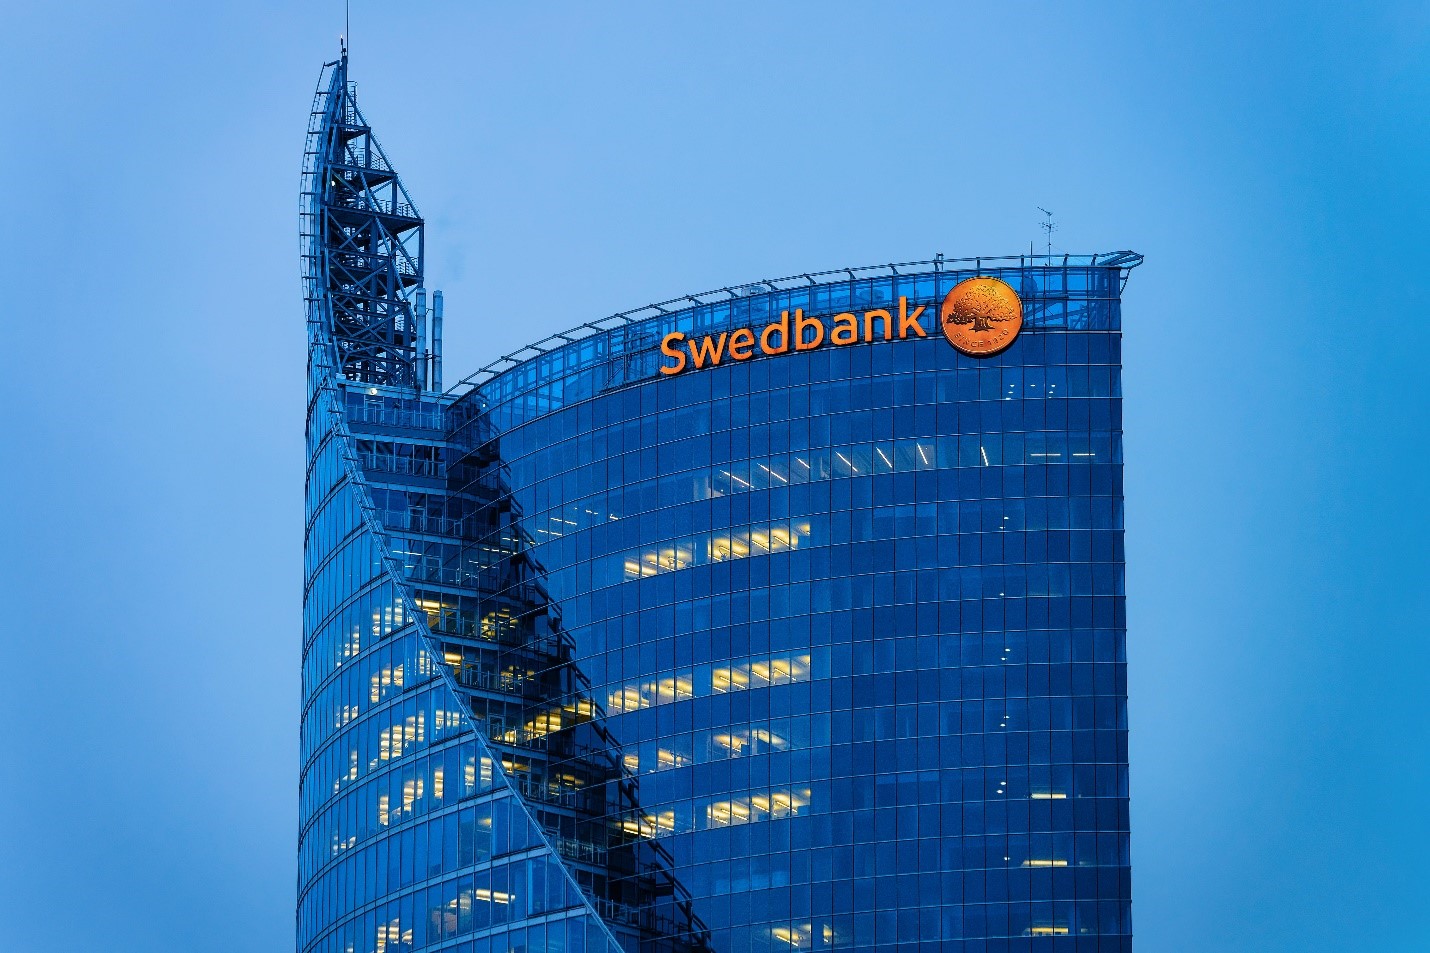 Swedbank credit cards - Swedbank